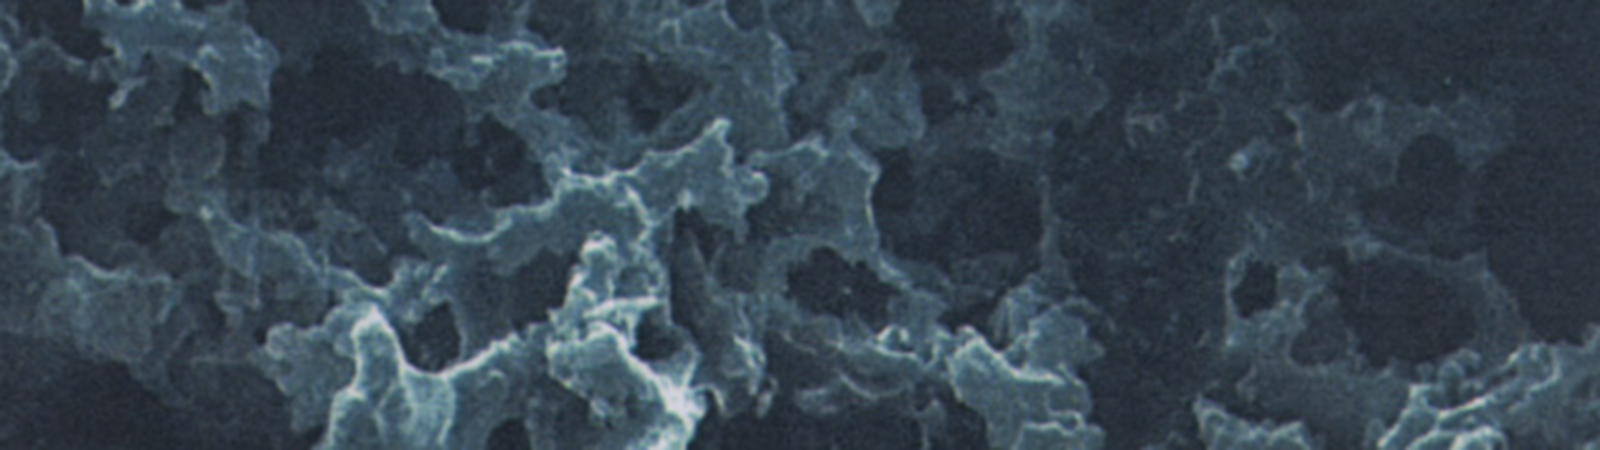 SACMI DFS1, la soluzione per la manutenzione proattiva degli stampi in resina porosa 